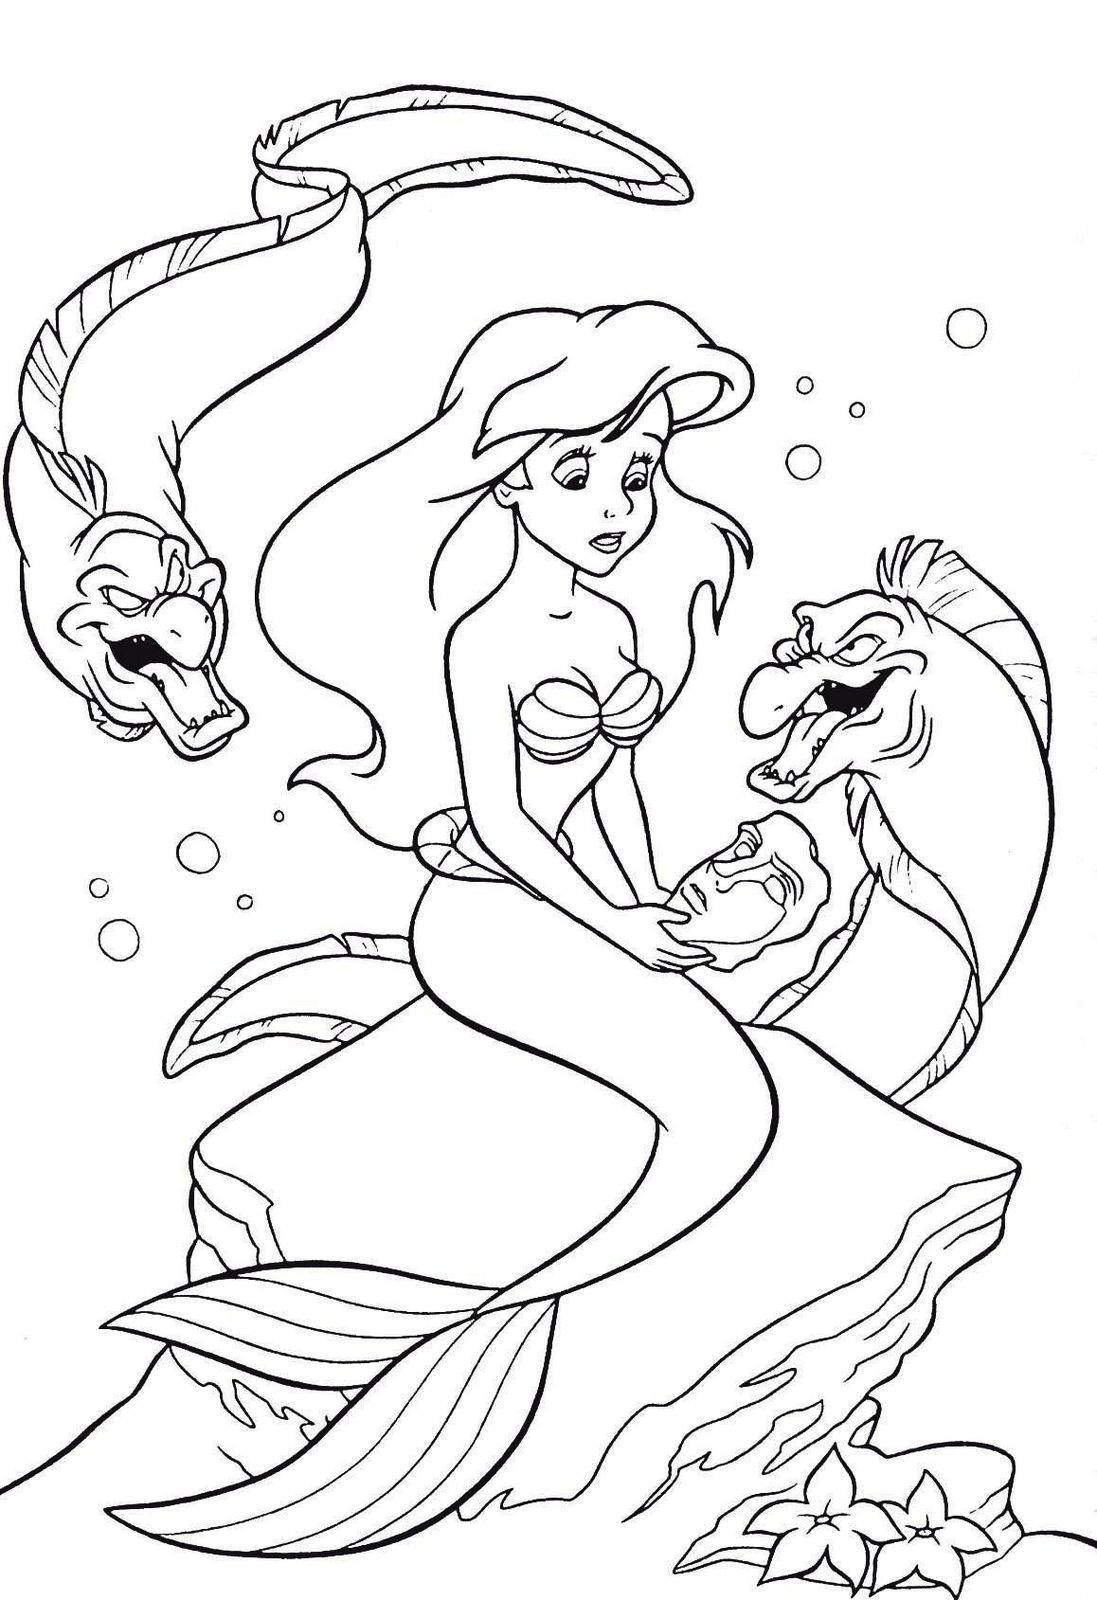 Ideas Fantasticas Dibujos Para Colorear De La Sirenita Ariel Y Sus